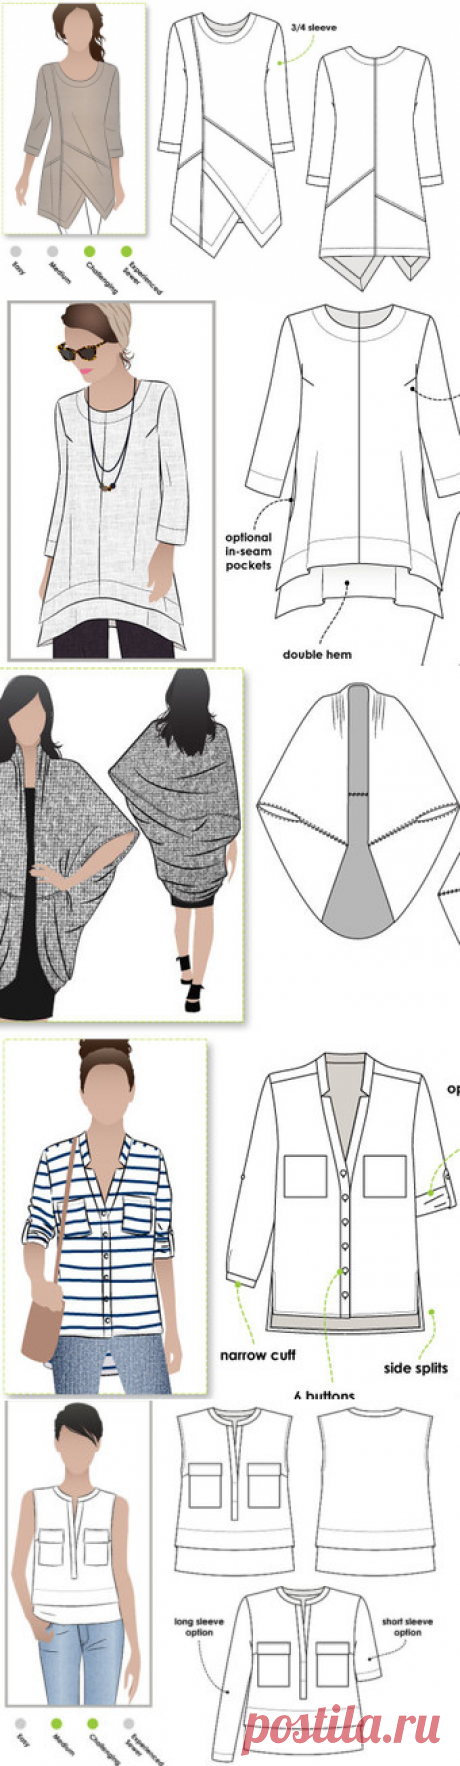 Lani Woven Tunic  Sizes 10 12 14  Women's Top PDF